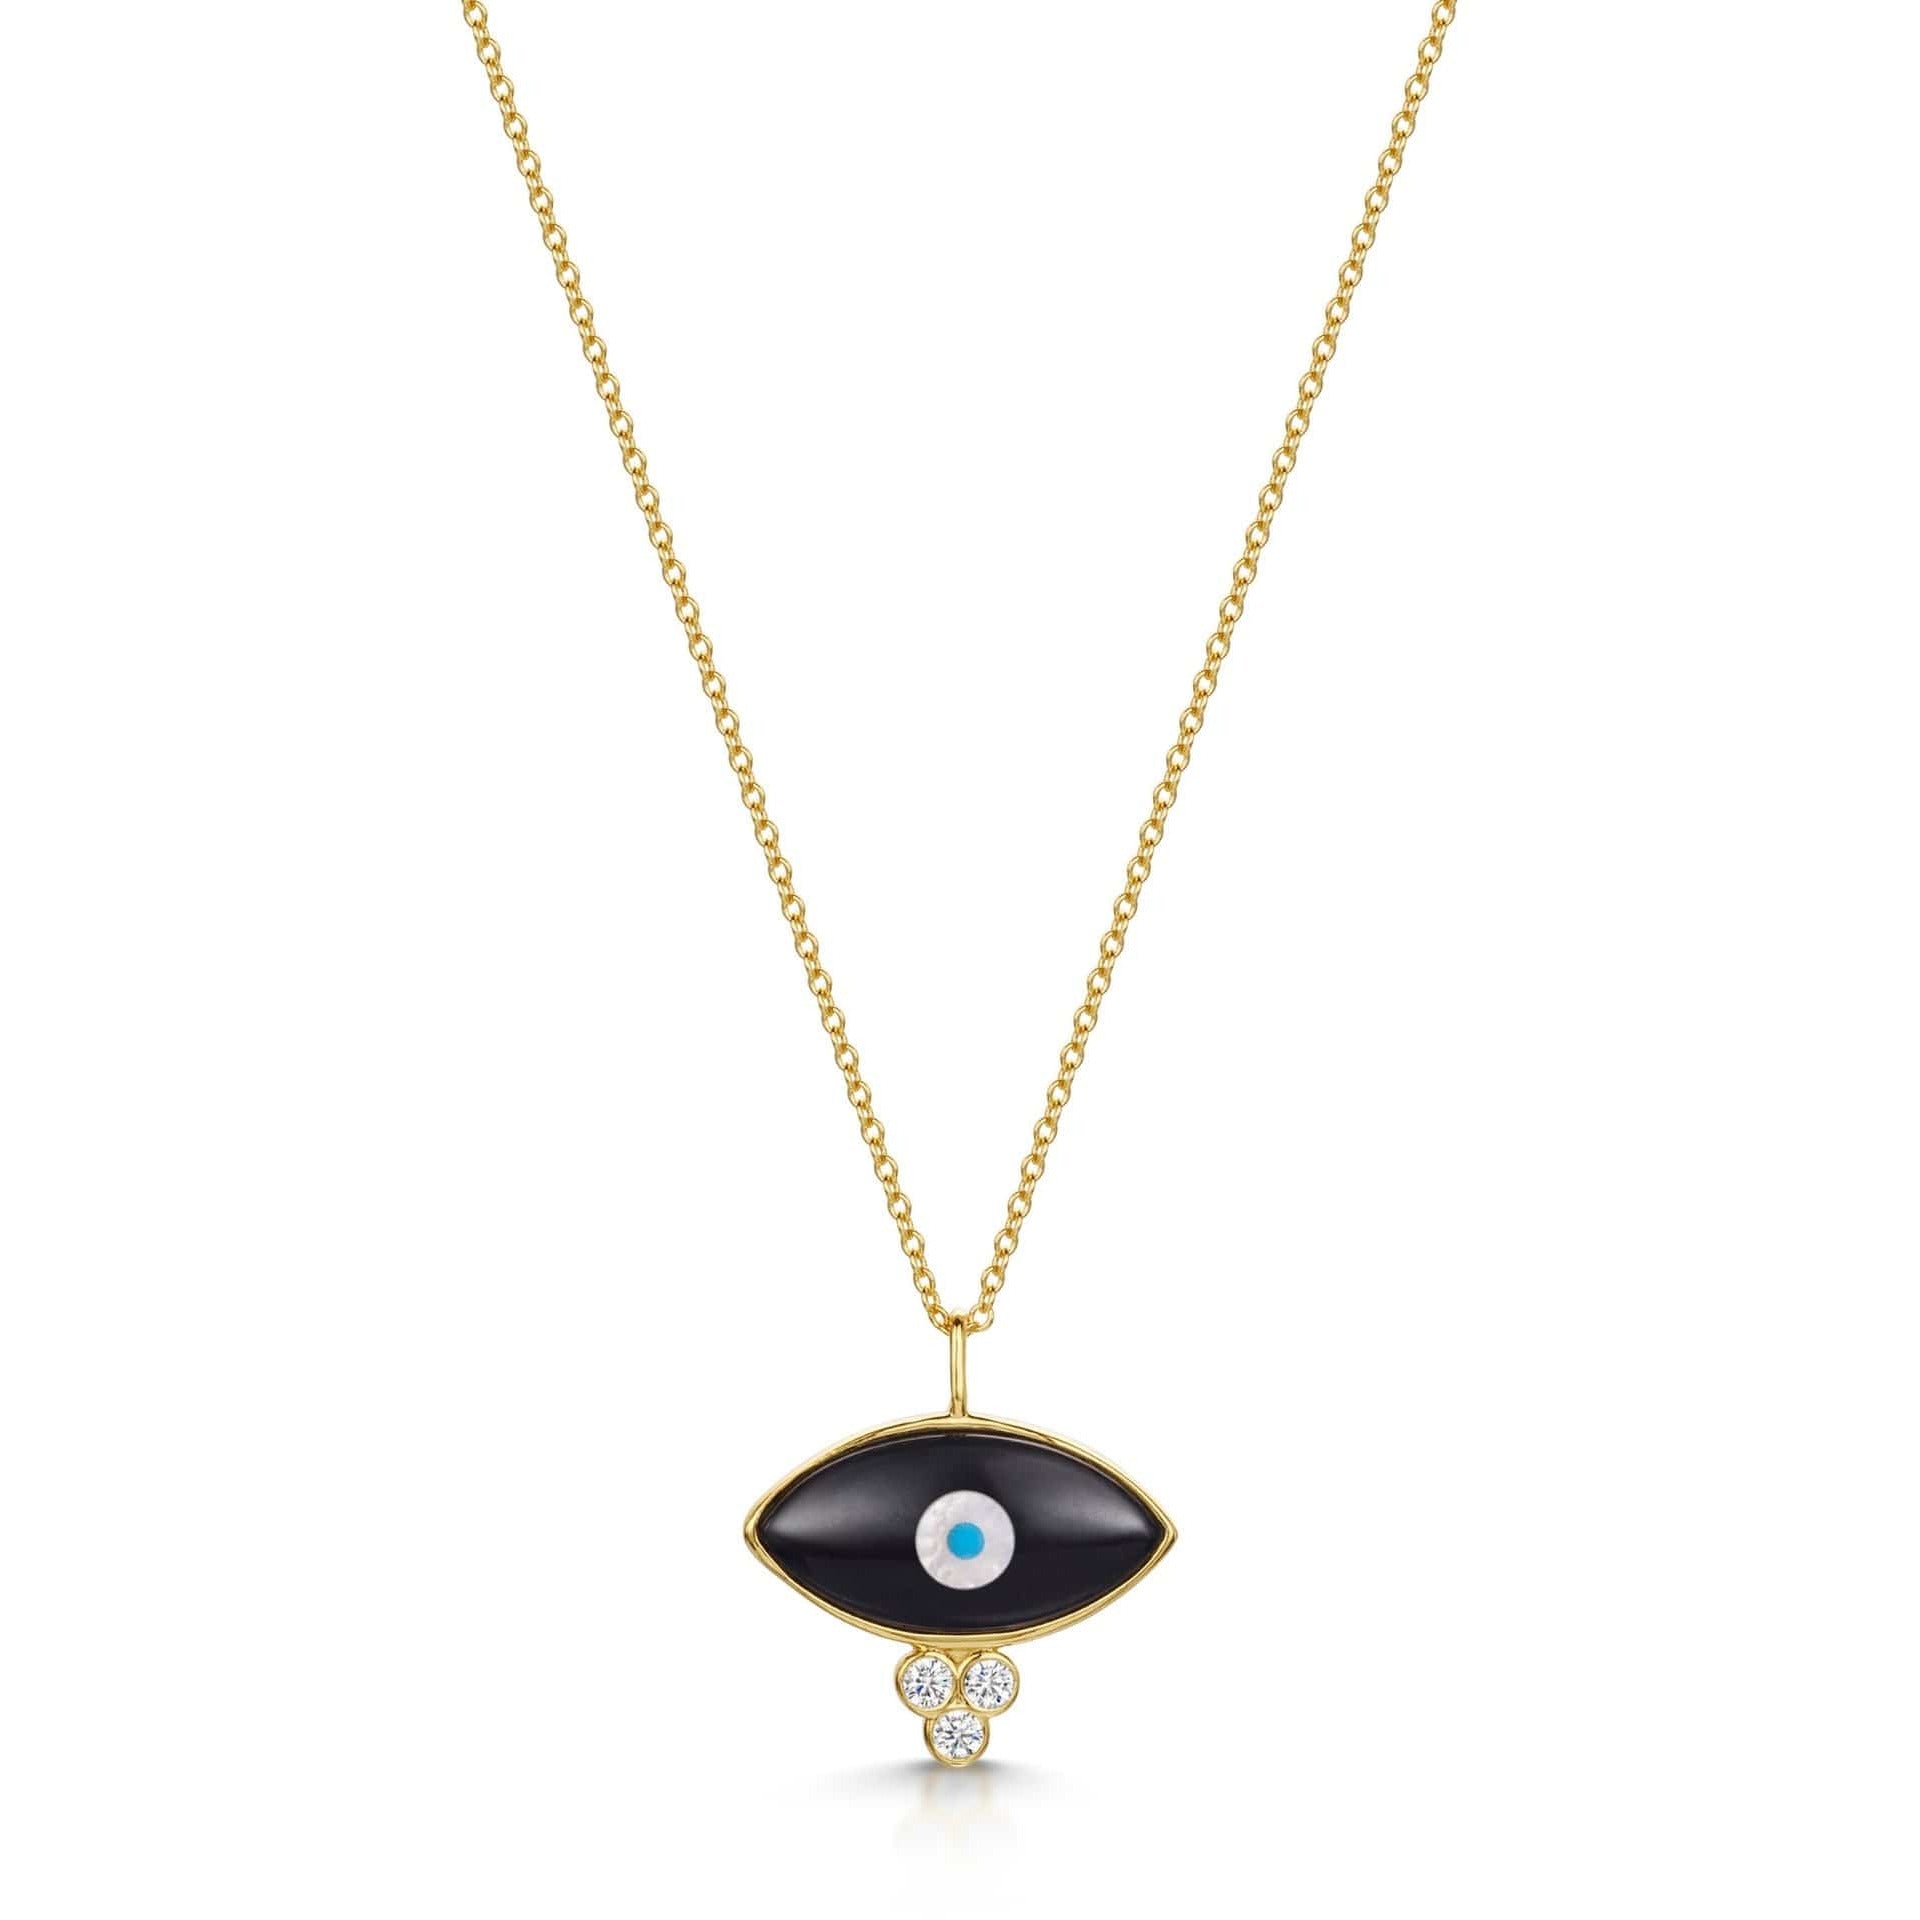 Fervor Montreal Necklace Divine Eye- Dew Drop Evil Eye Necklace